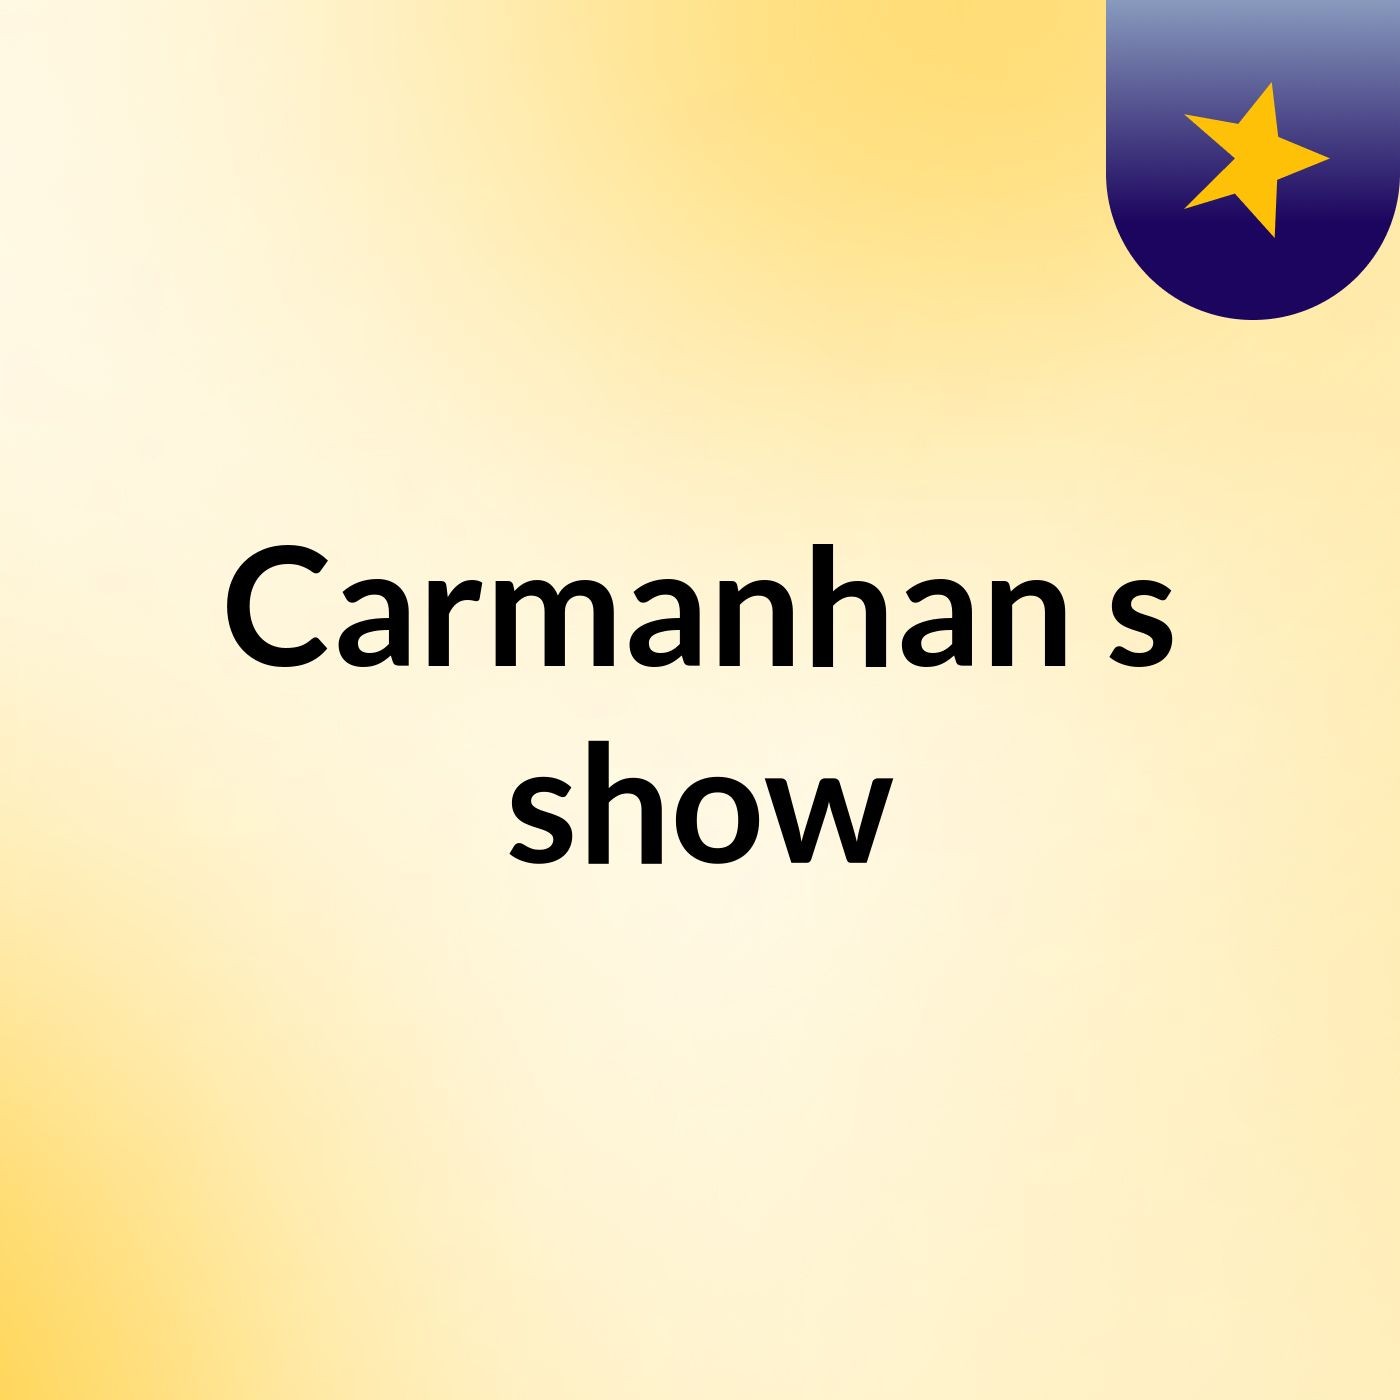 Carmanhan's show